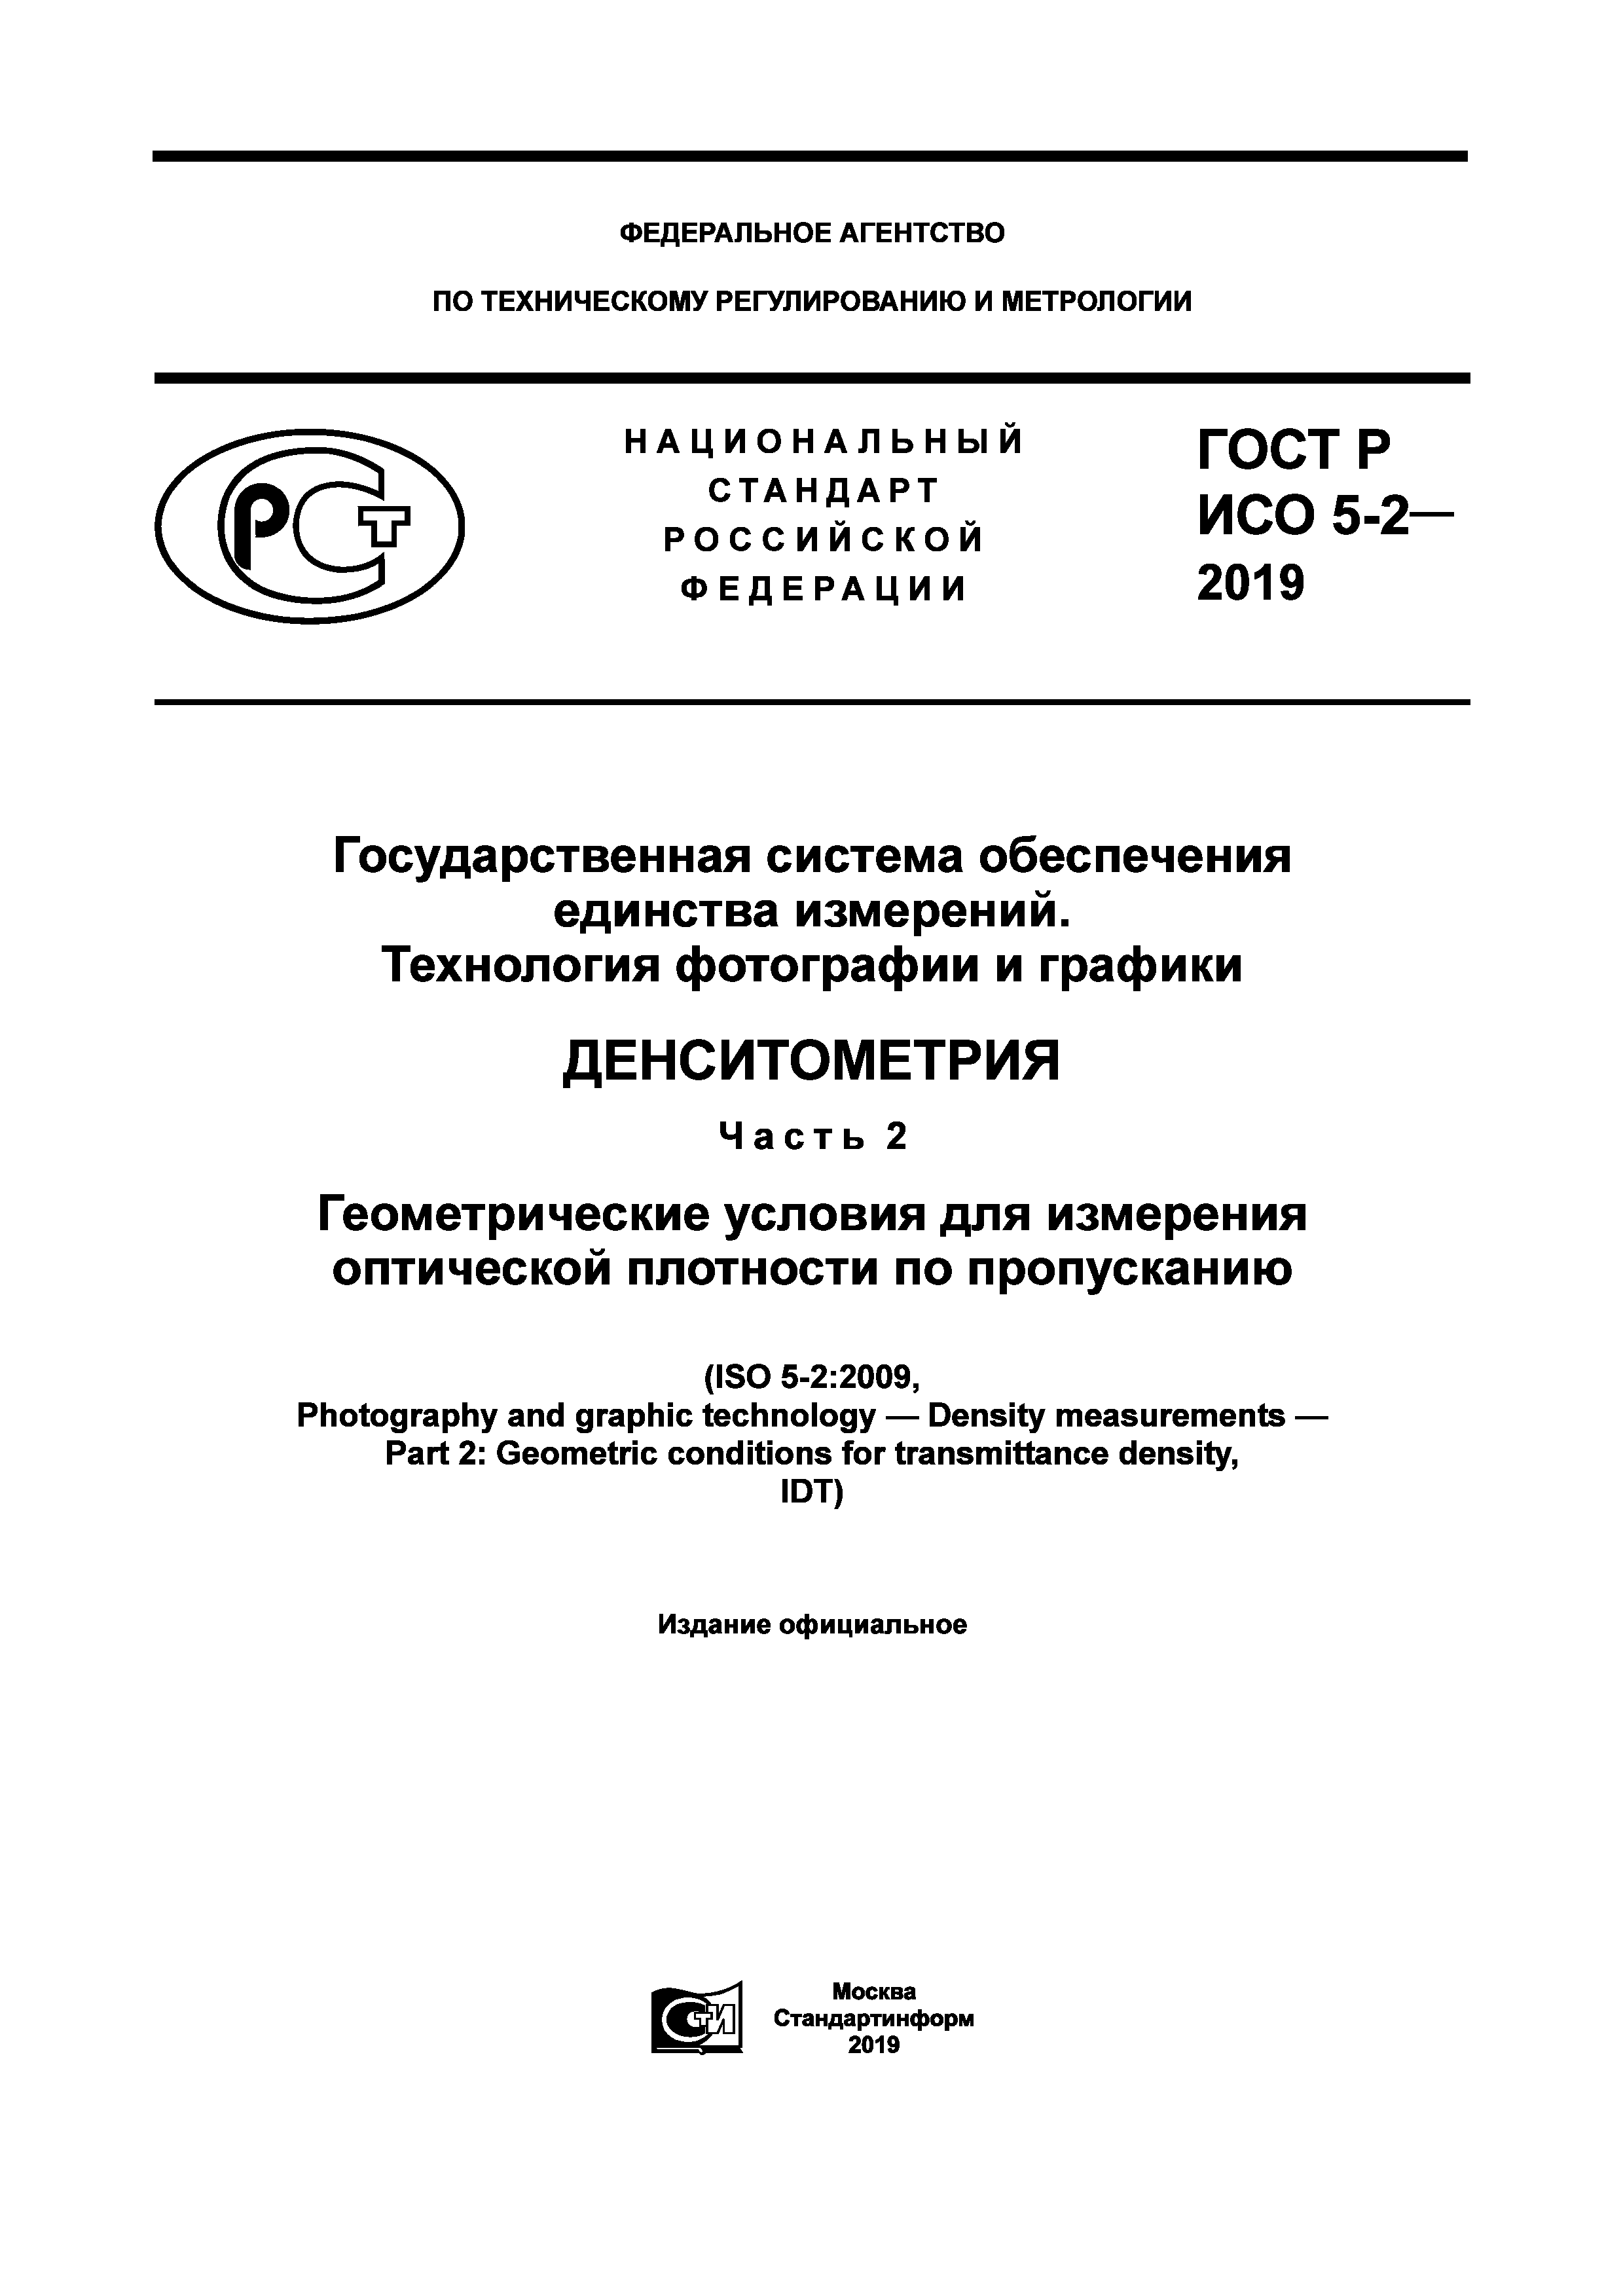 ГОСТ Р ИСО 5-2-2019